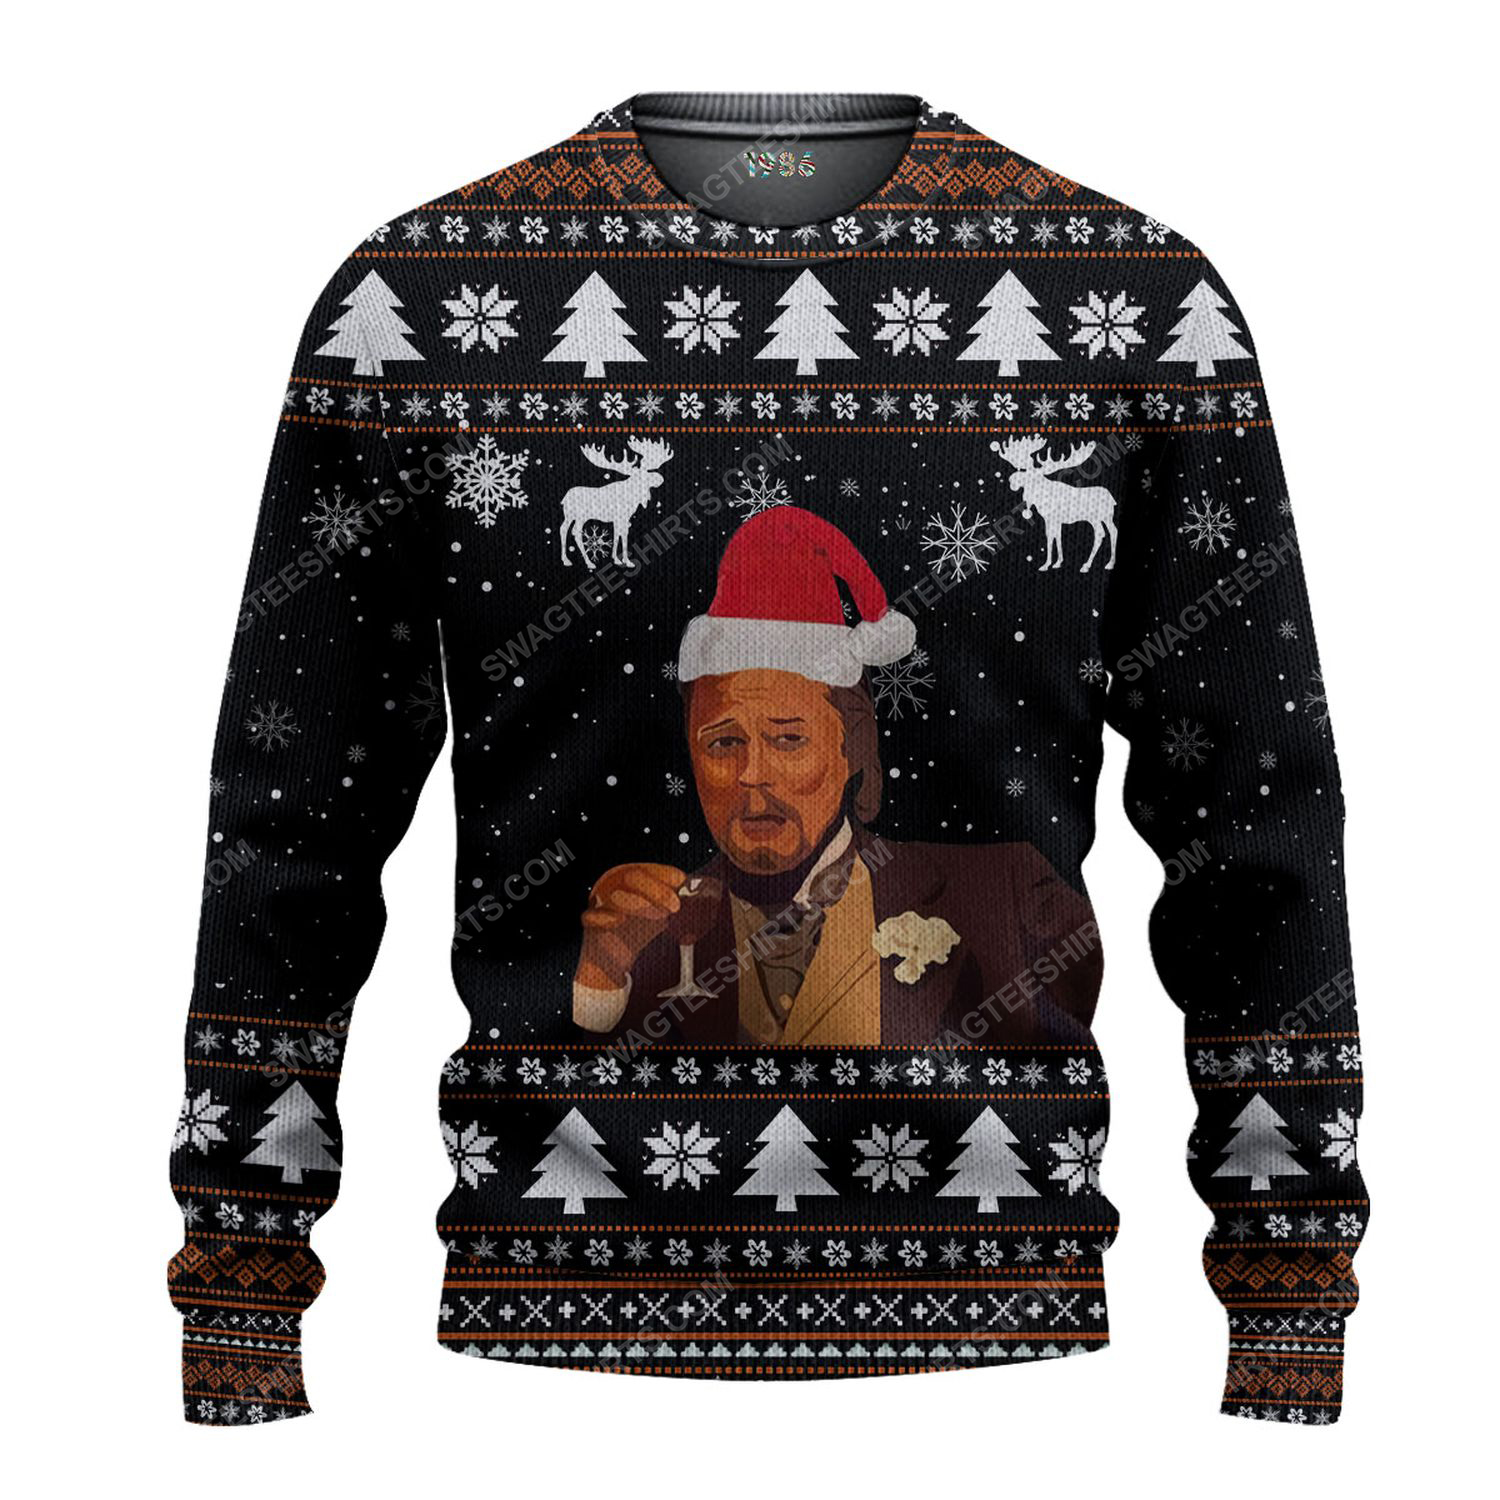 Leonardo dicaprio meme ugly christmas sweater 1 - Copy (3)